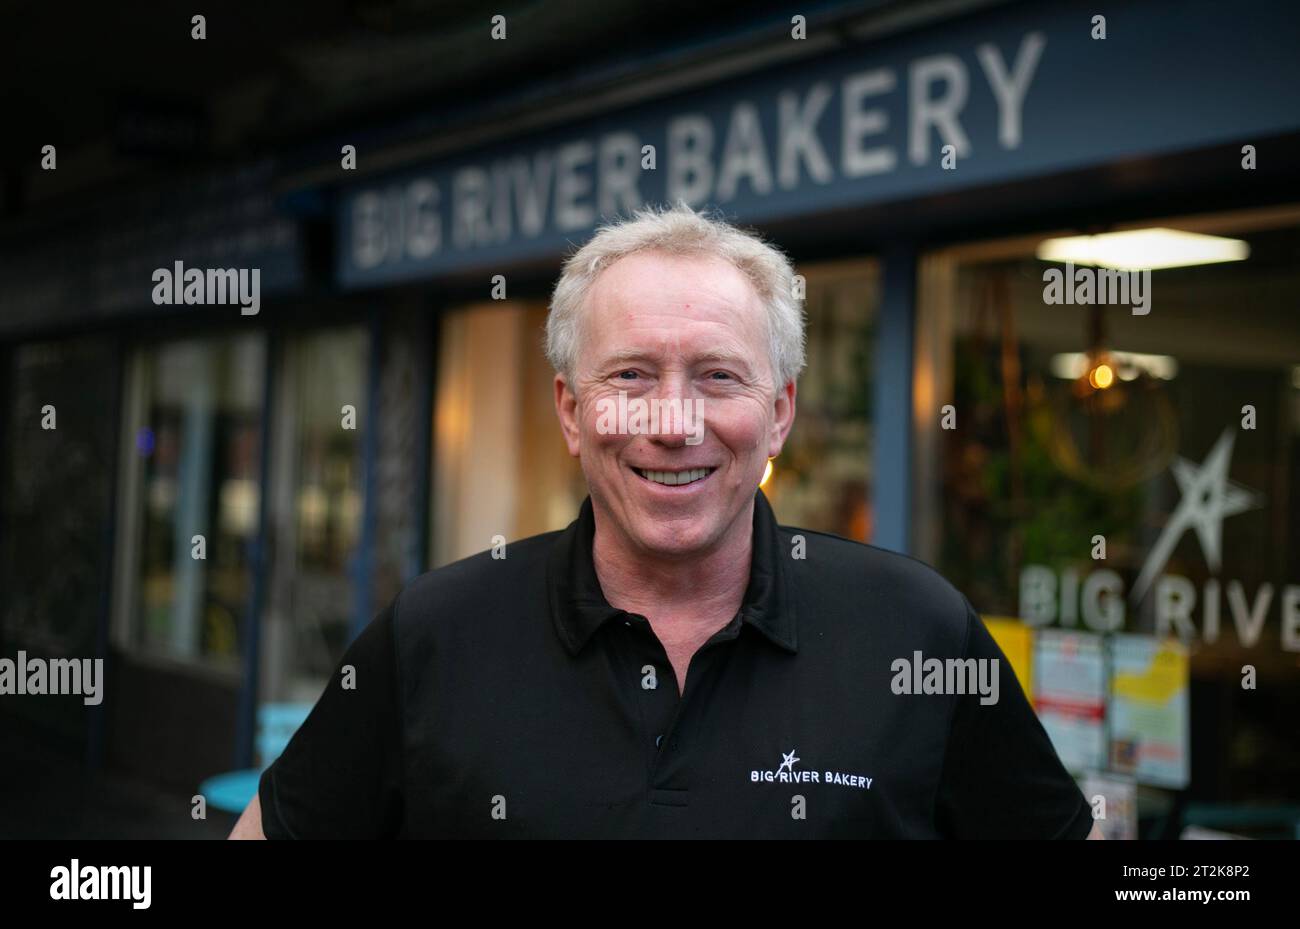 Andy Haddon in der Big River Bäckerei in Newcastle, gegründet von Andy Haddon. Eine kleine Bäckerei, die die lokale Gemeinde bedient und auch Mitarbeiter betreibt Stockfoto